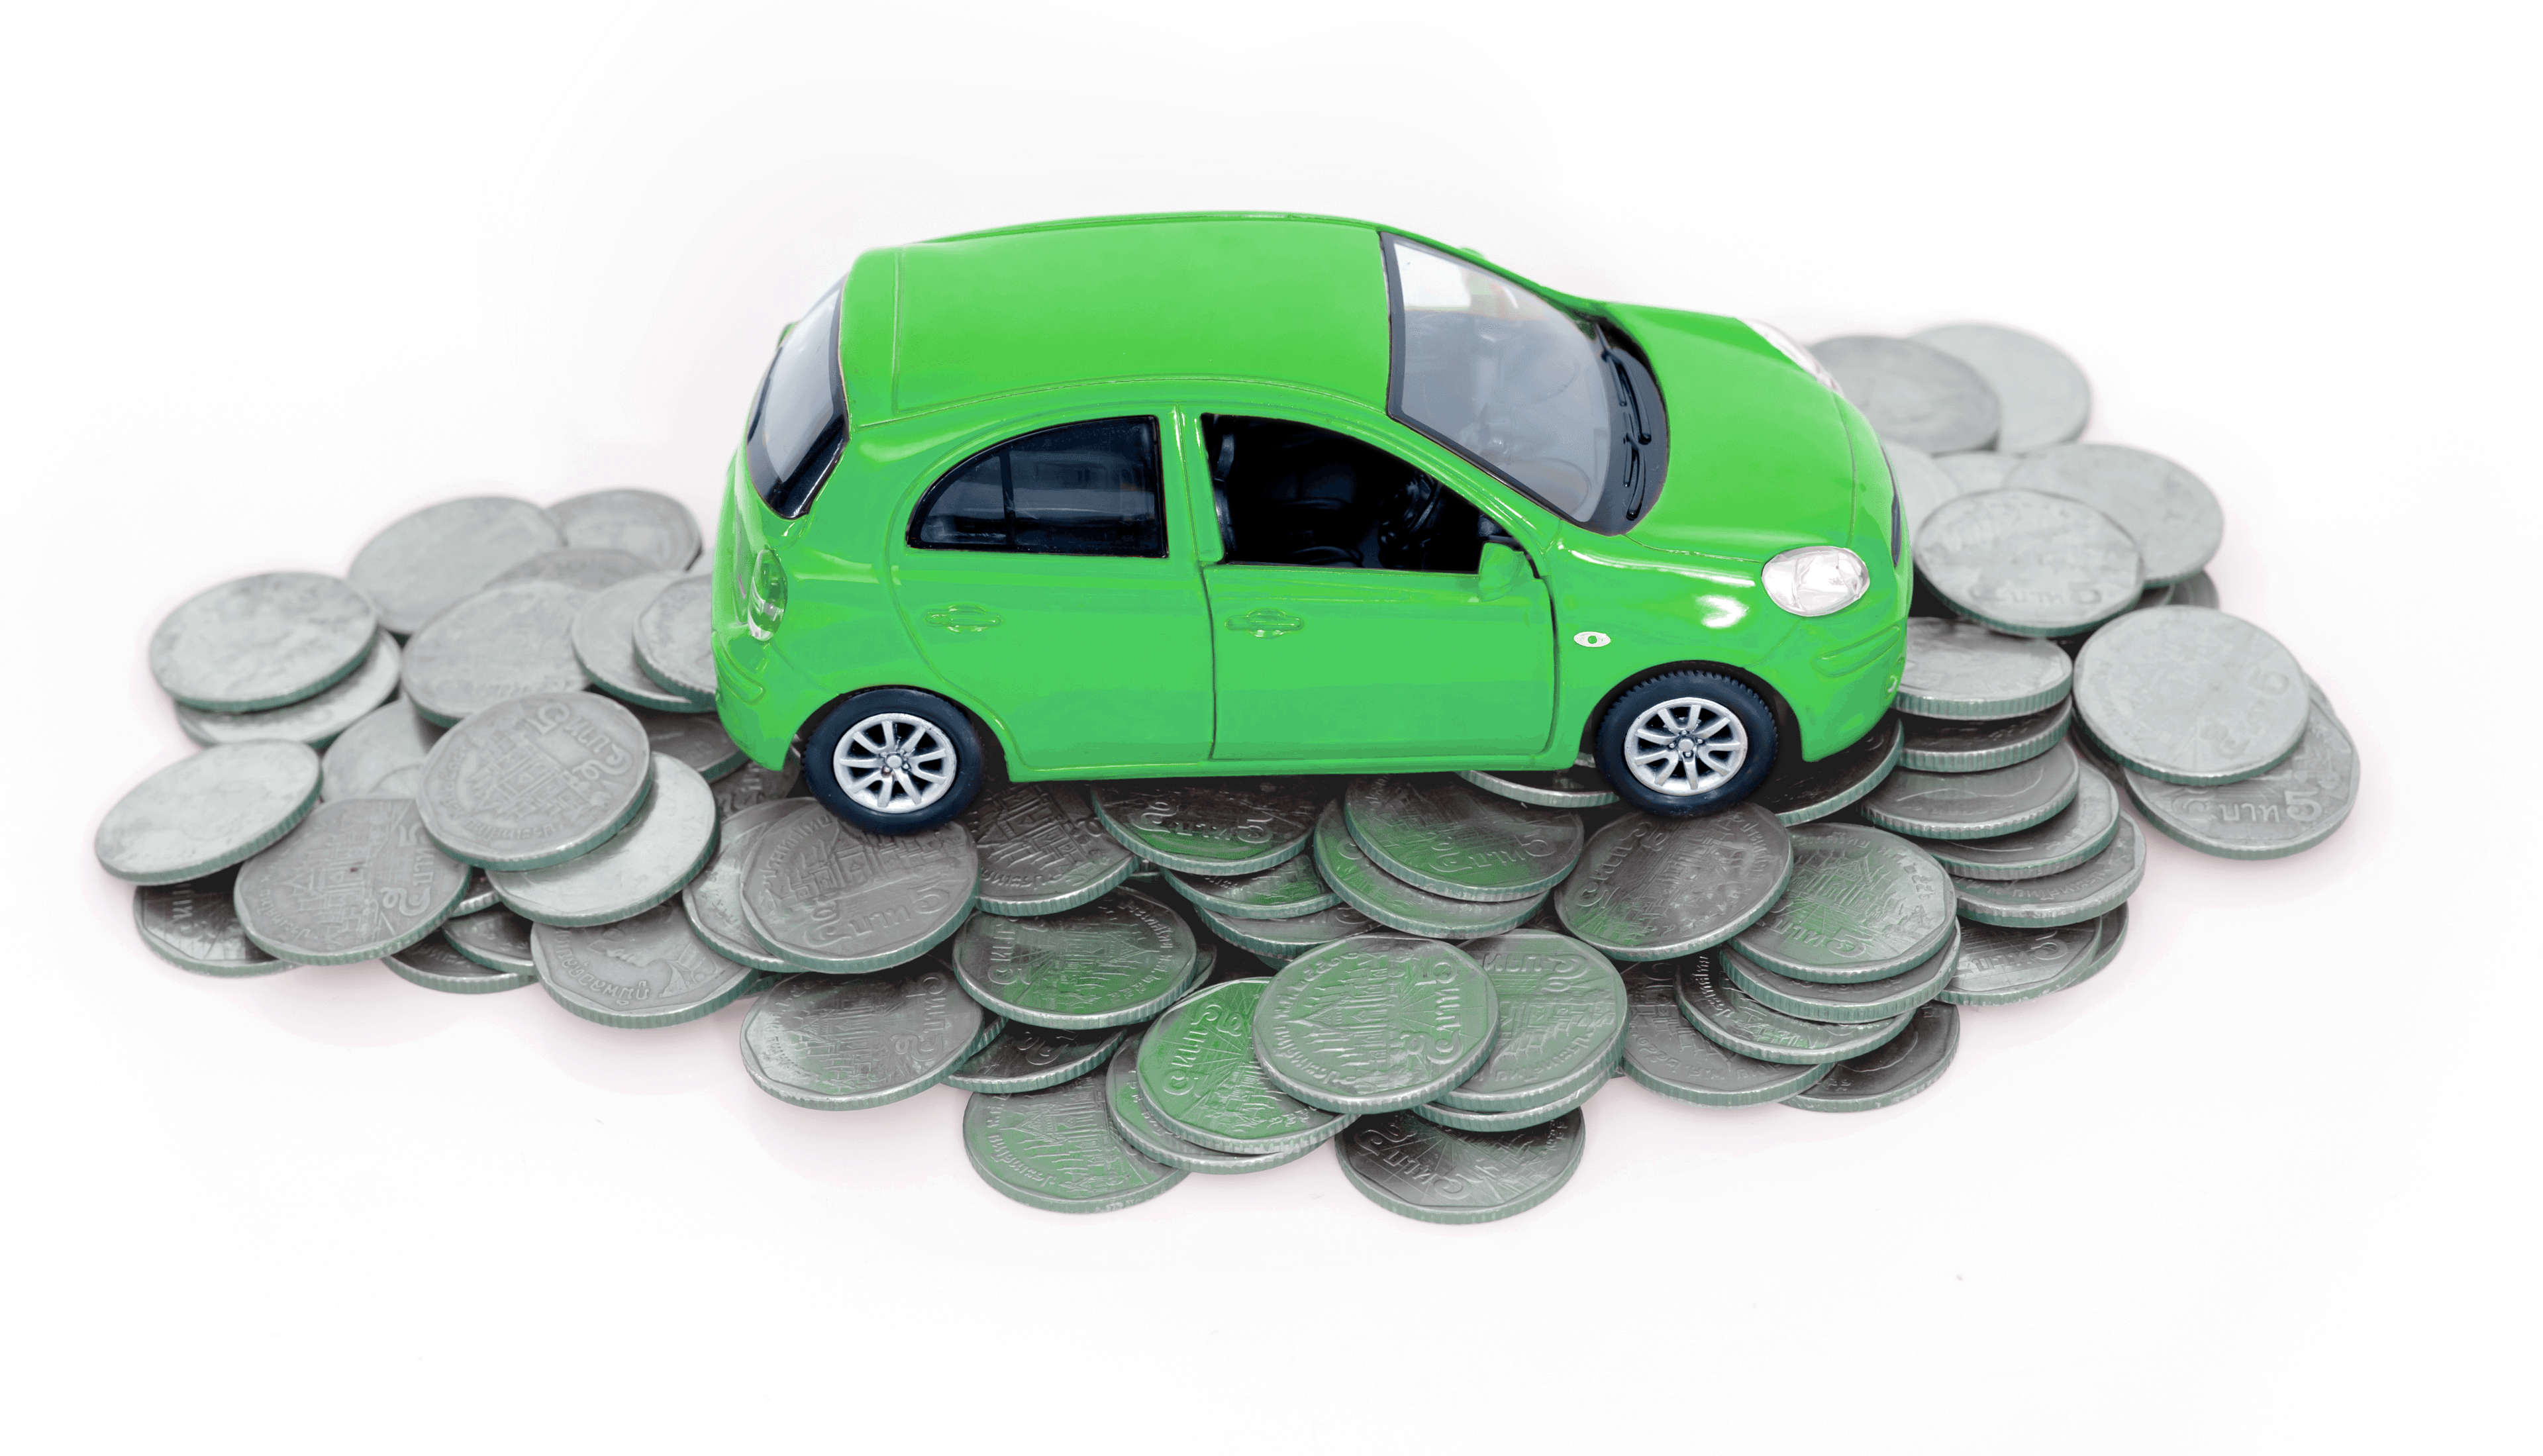 Posiadacz ubezpieczenia GAP fakturowy uzyskuje kwotę odszkodowania równą cenie nowego samochodu